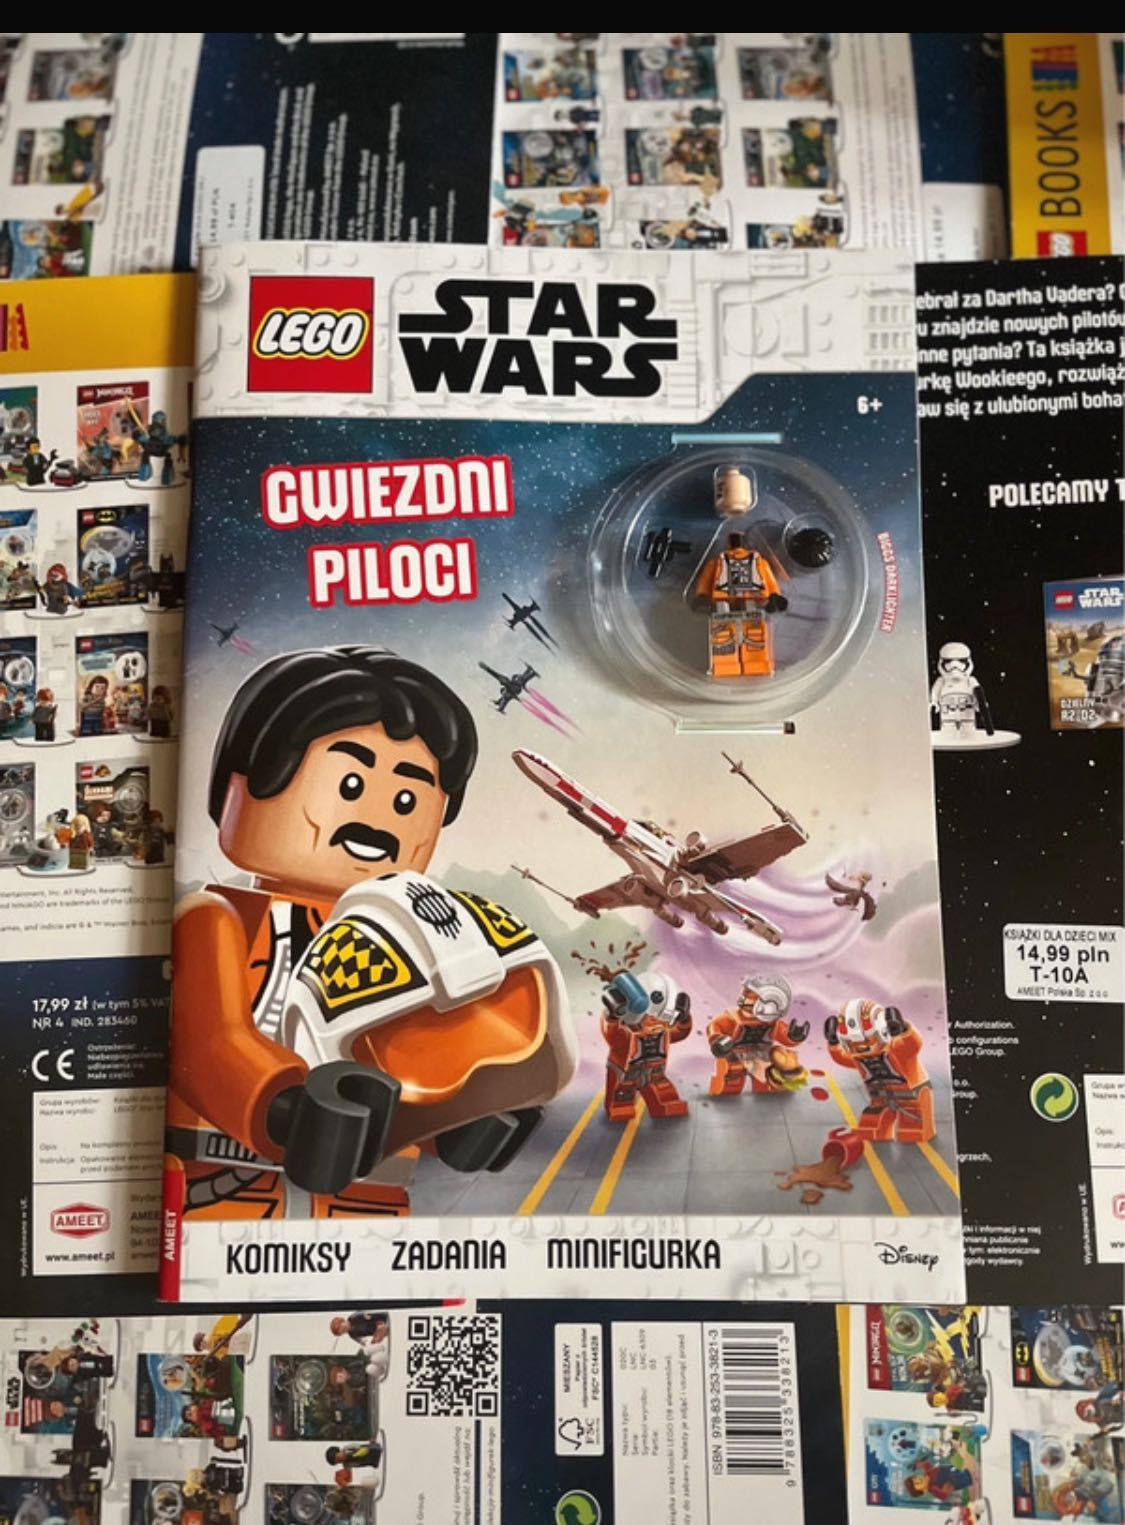 Lego Star wars gwiezdni piloci 2019 ameet